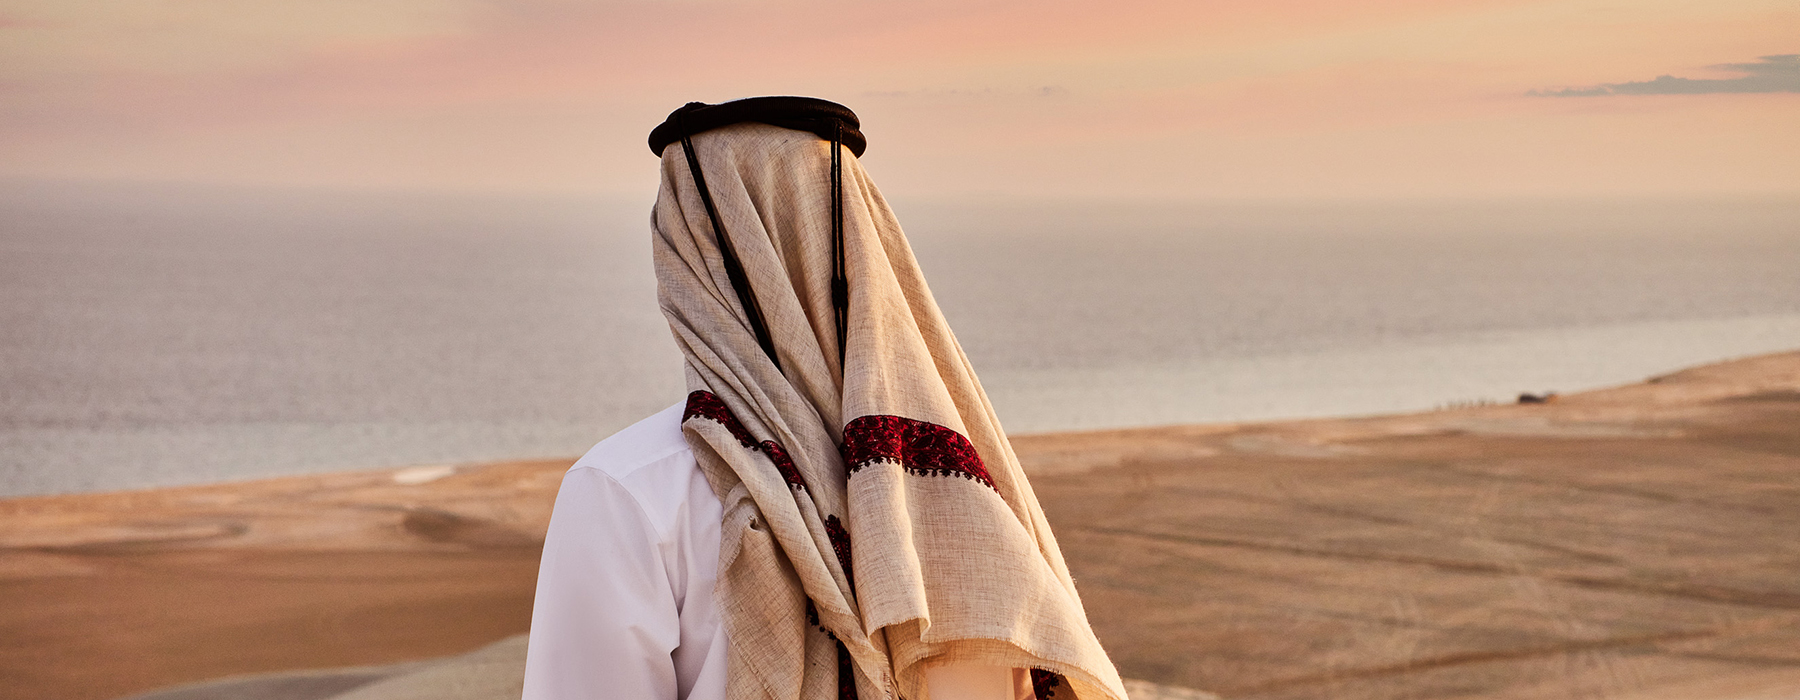 L'Esprit Voyageurs Qatar